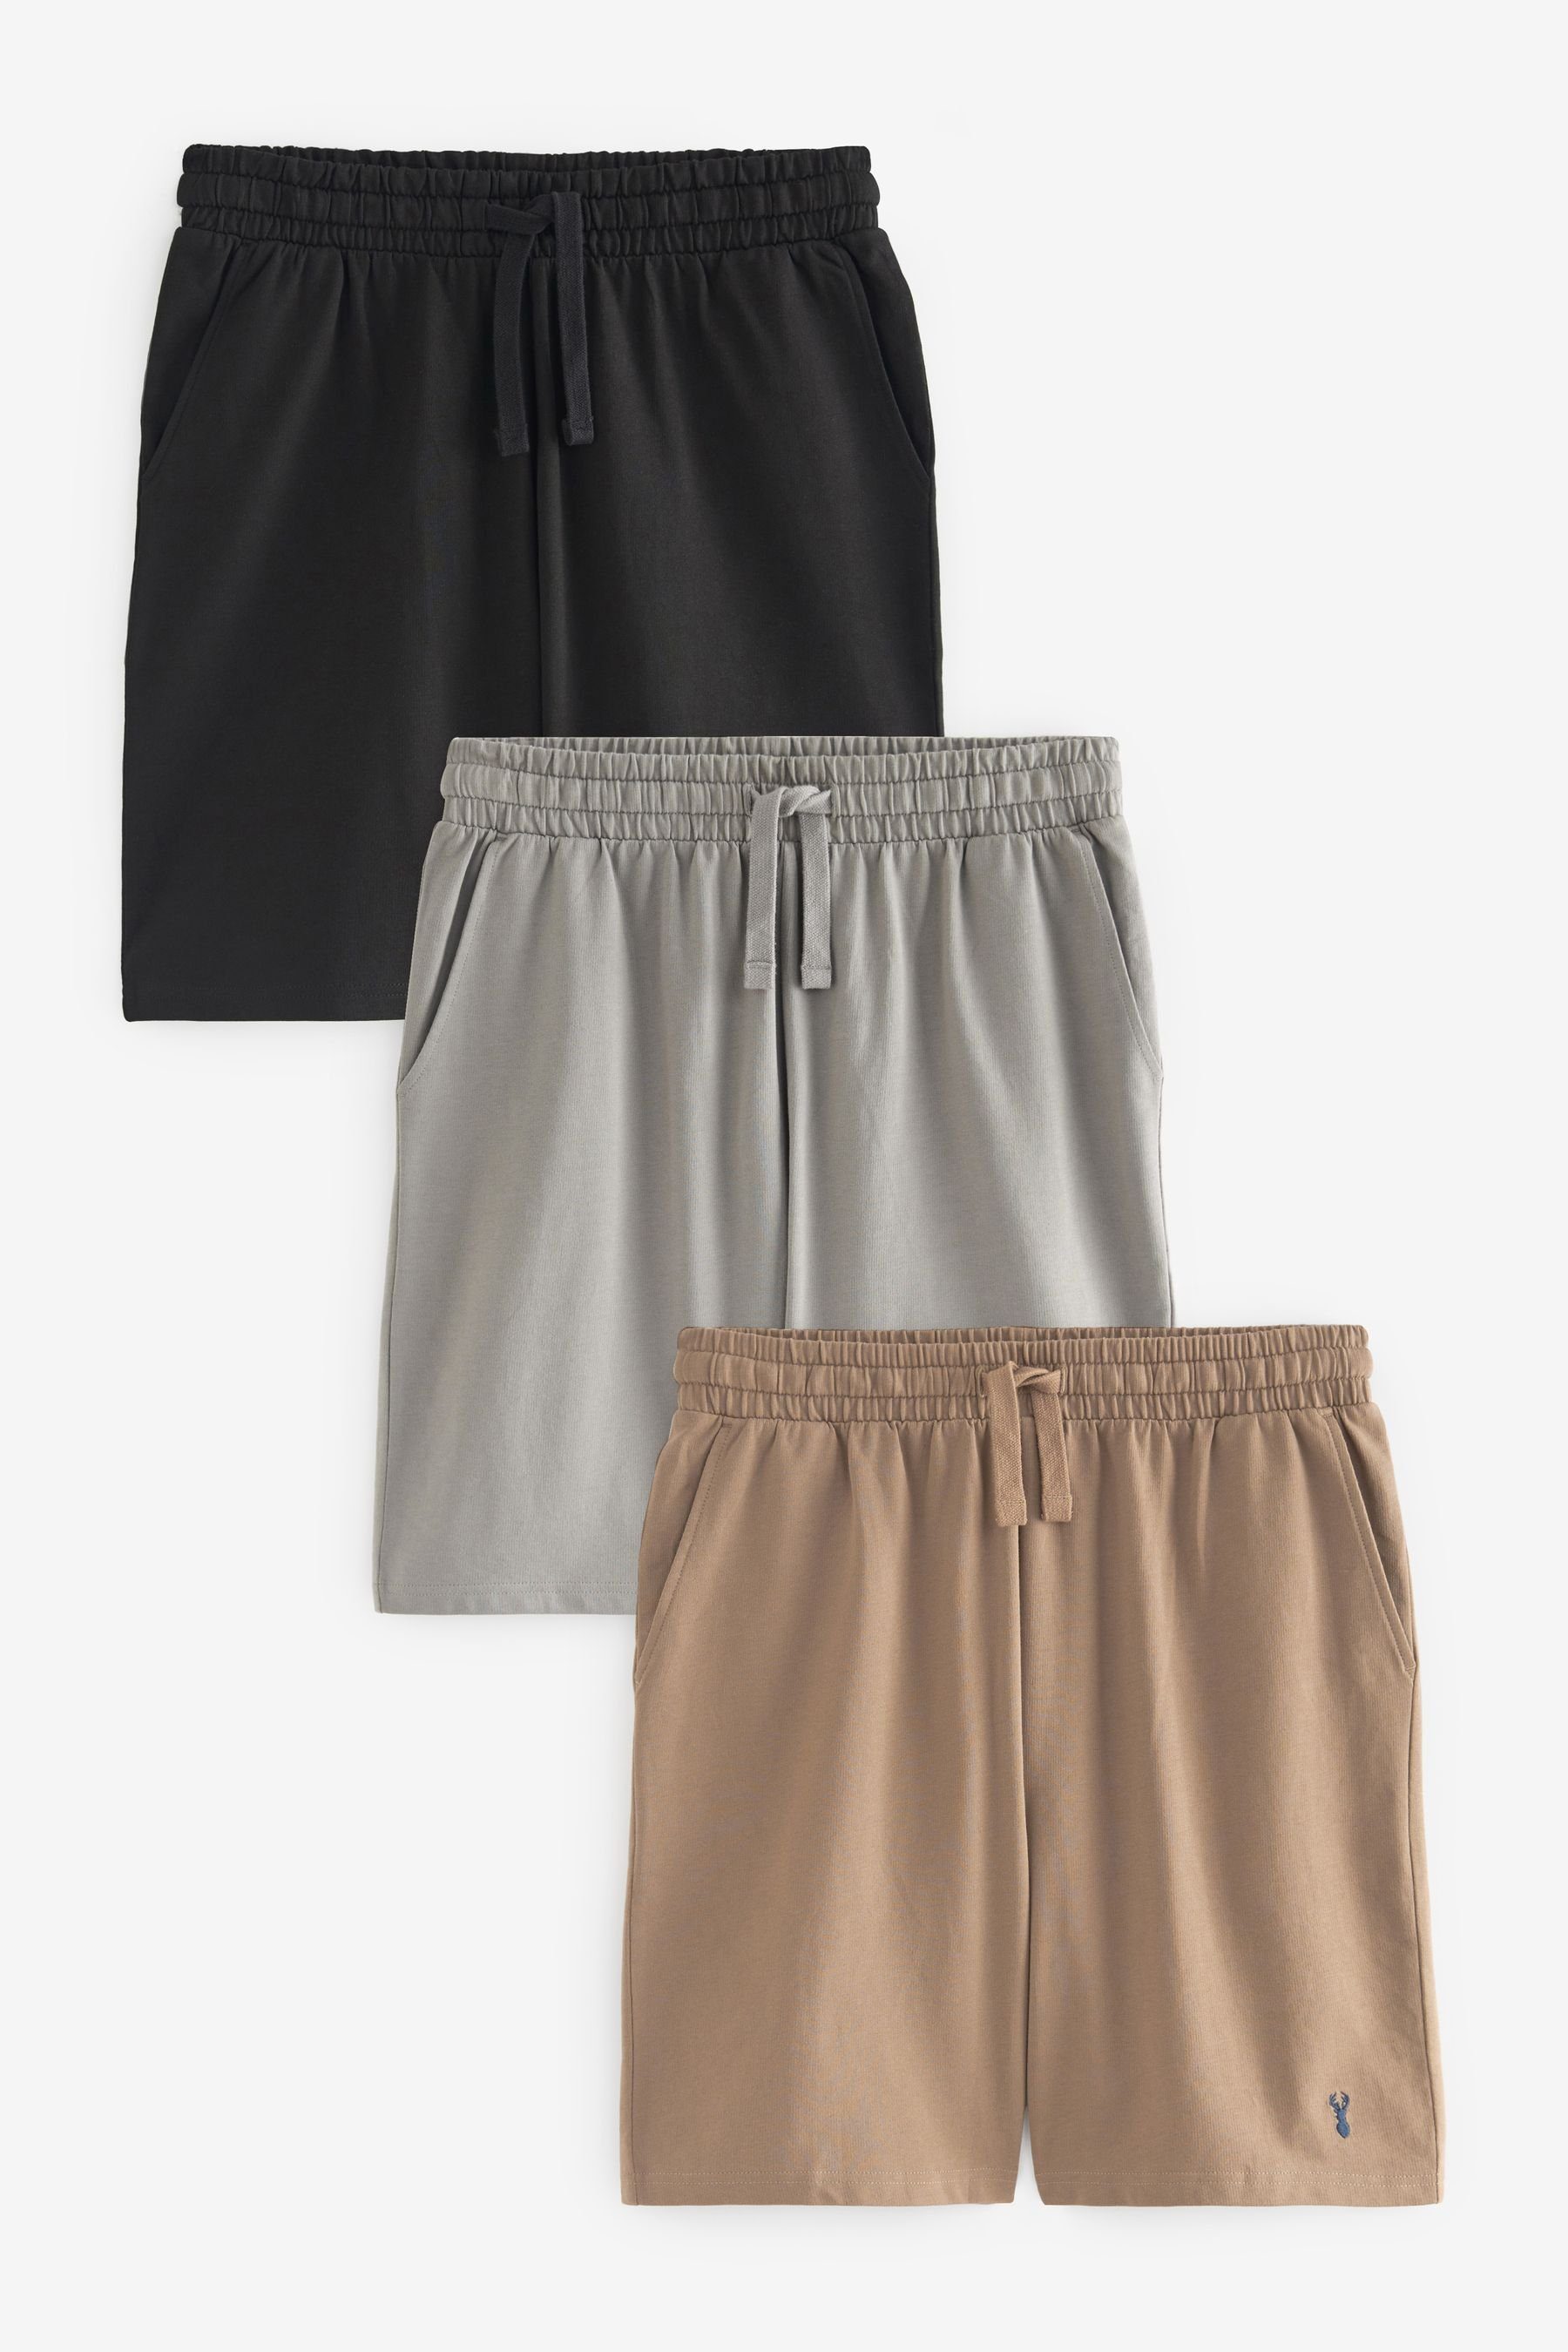 Schlafshorts Shorts, Black/Grey/Tan Leichte Next (3-tlg) 3er-Pack Brown